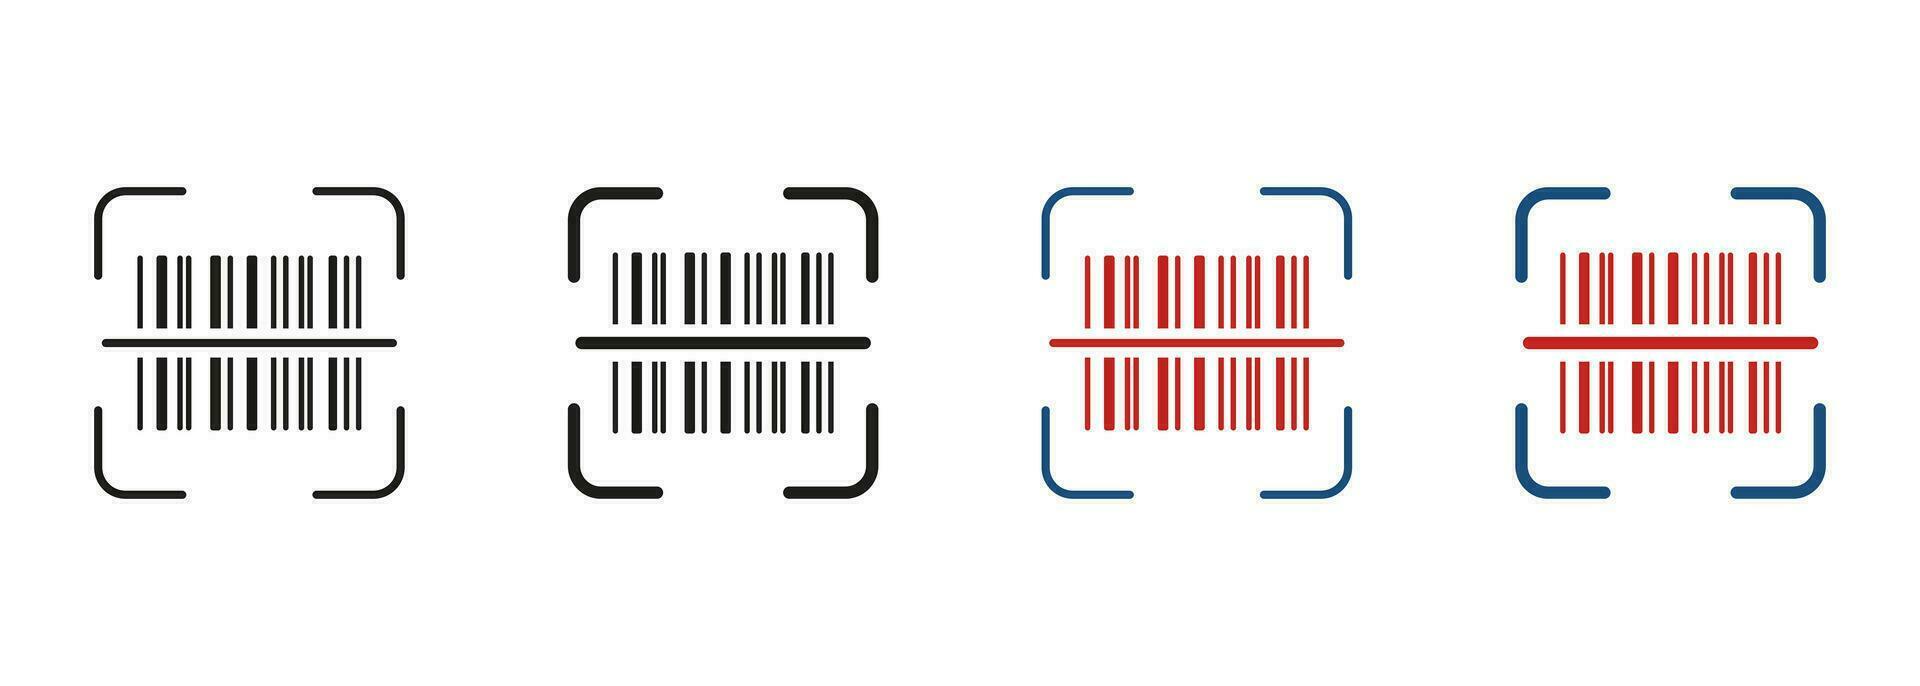 scannen bar code lijn en silhouet icoon set. Product informatie identificatie. streepjescode label scanner pictogram. digitaal scannen technologie symbool verzameling. geïsoleerd vector illustratie.